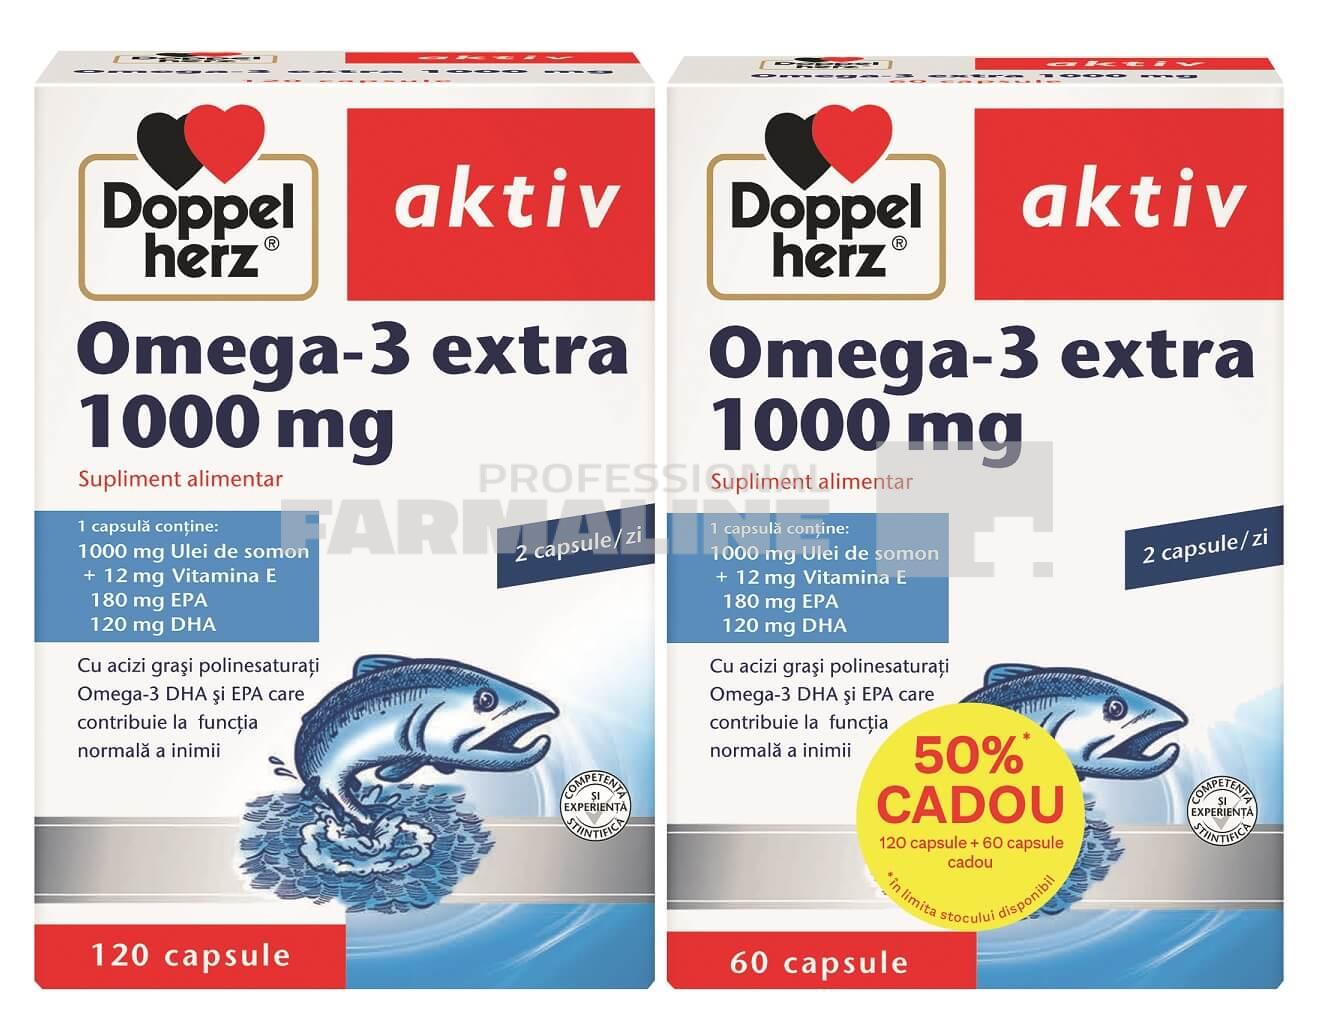 omega 3 doppelherz 120+60 dr max Doppelherz Aktiv Omega 3 Extra 1000 mg 120 capsule + 60 capsule Cadou